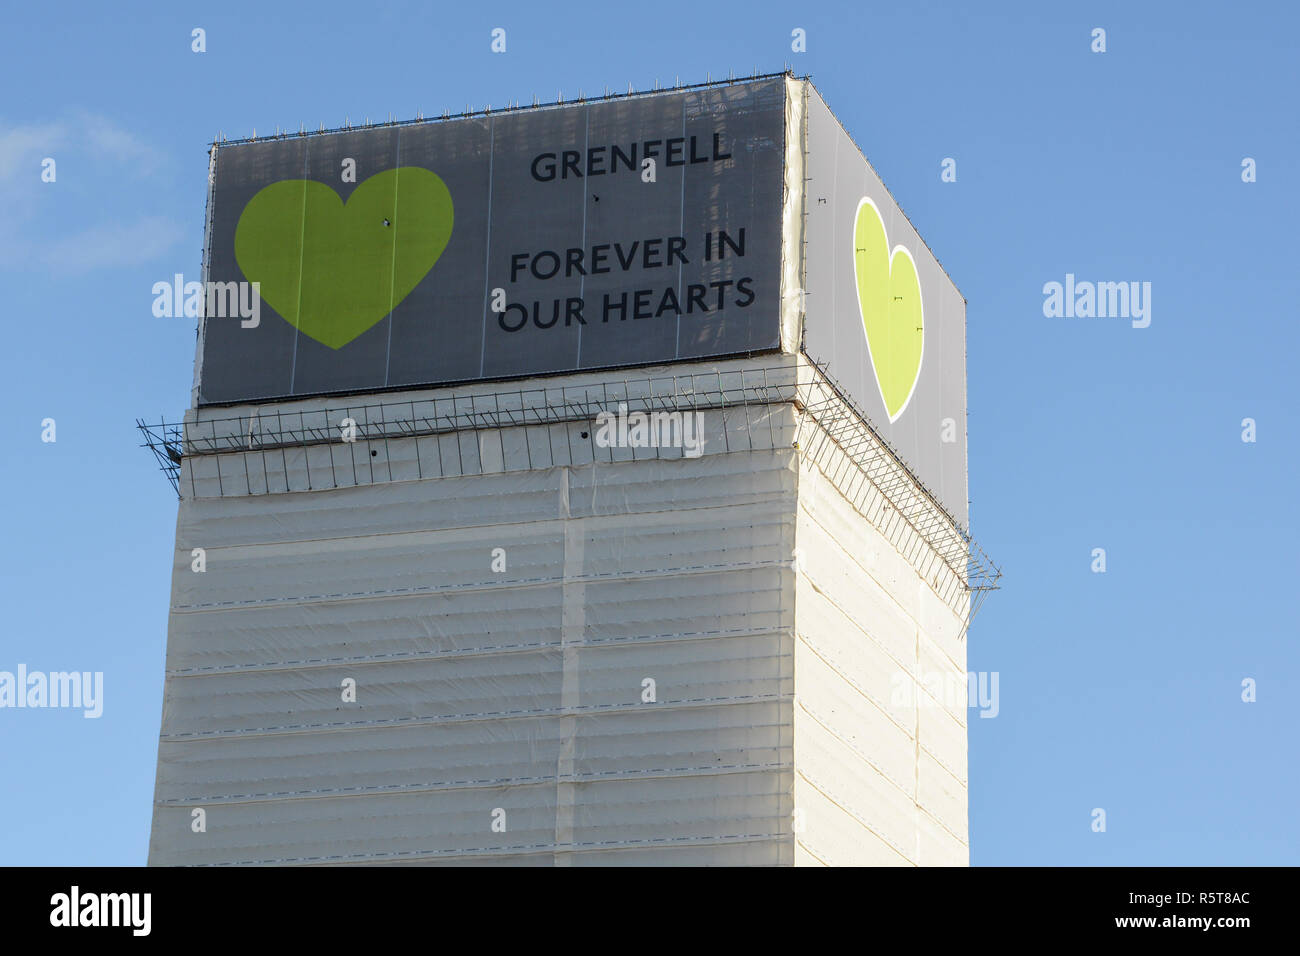 Il sito della torre Grenfell alto-aumento appartamento incendio tragedia - Forever nei nostri cuori, Londra, Inghilterra, Regno Unito Foto Stock